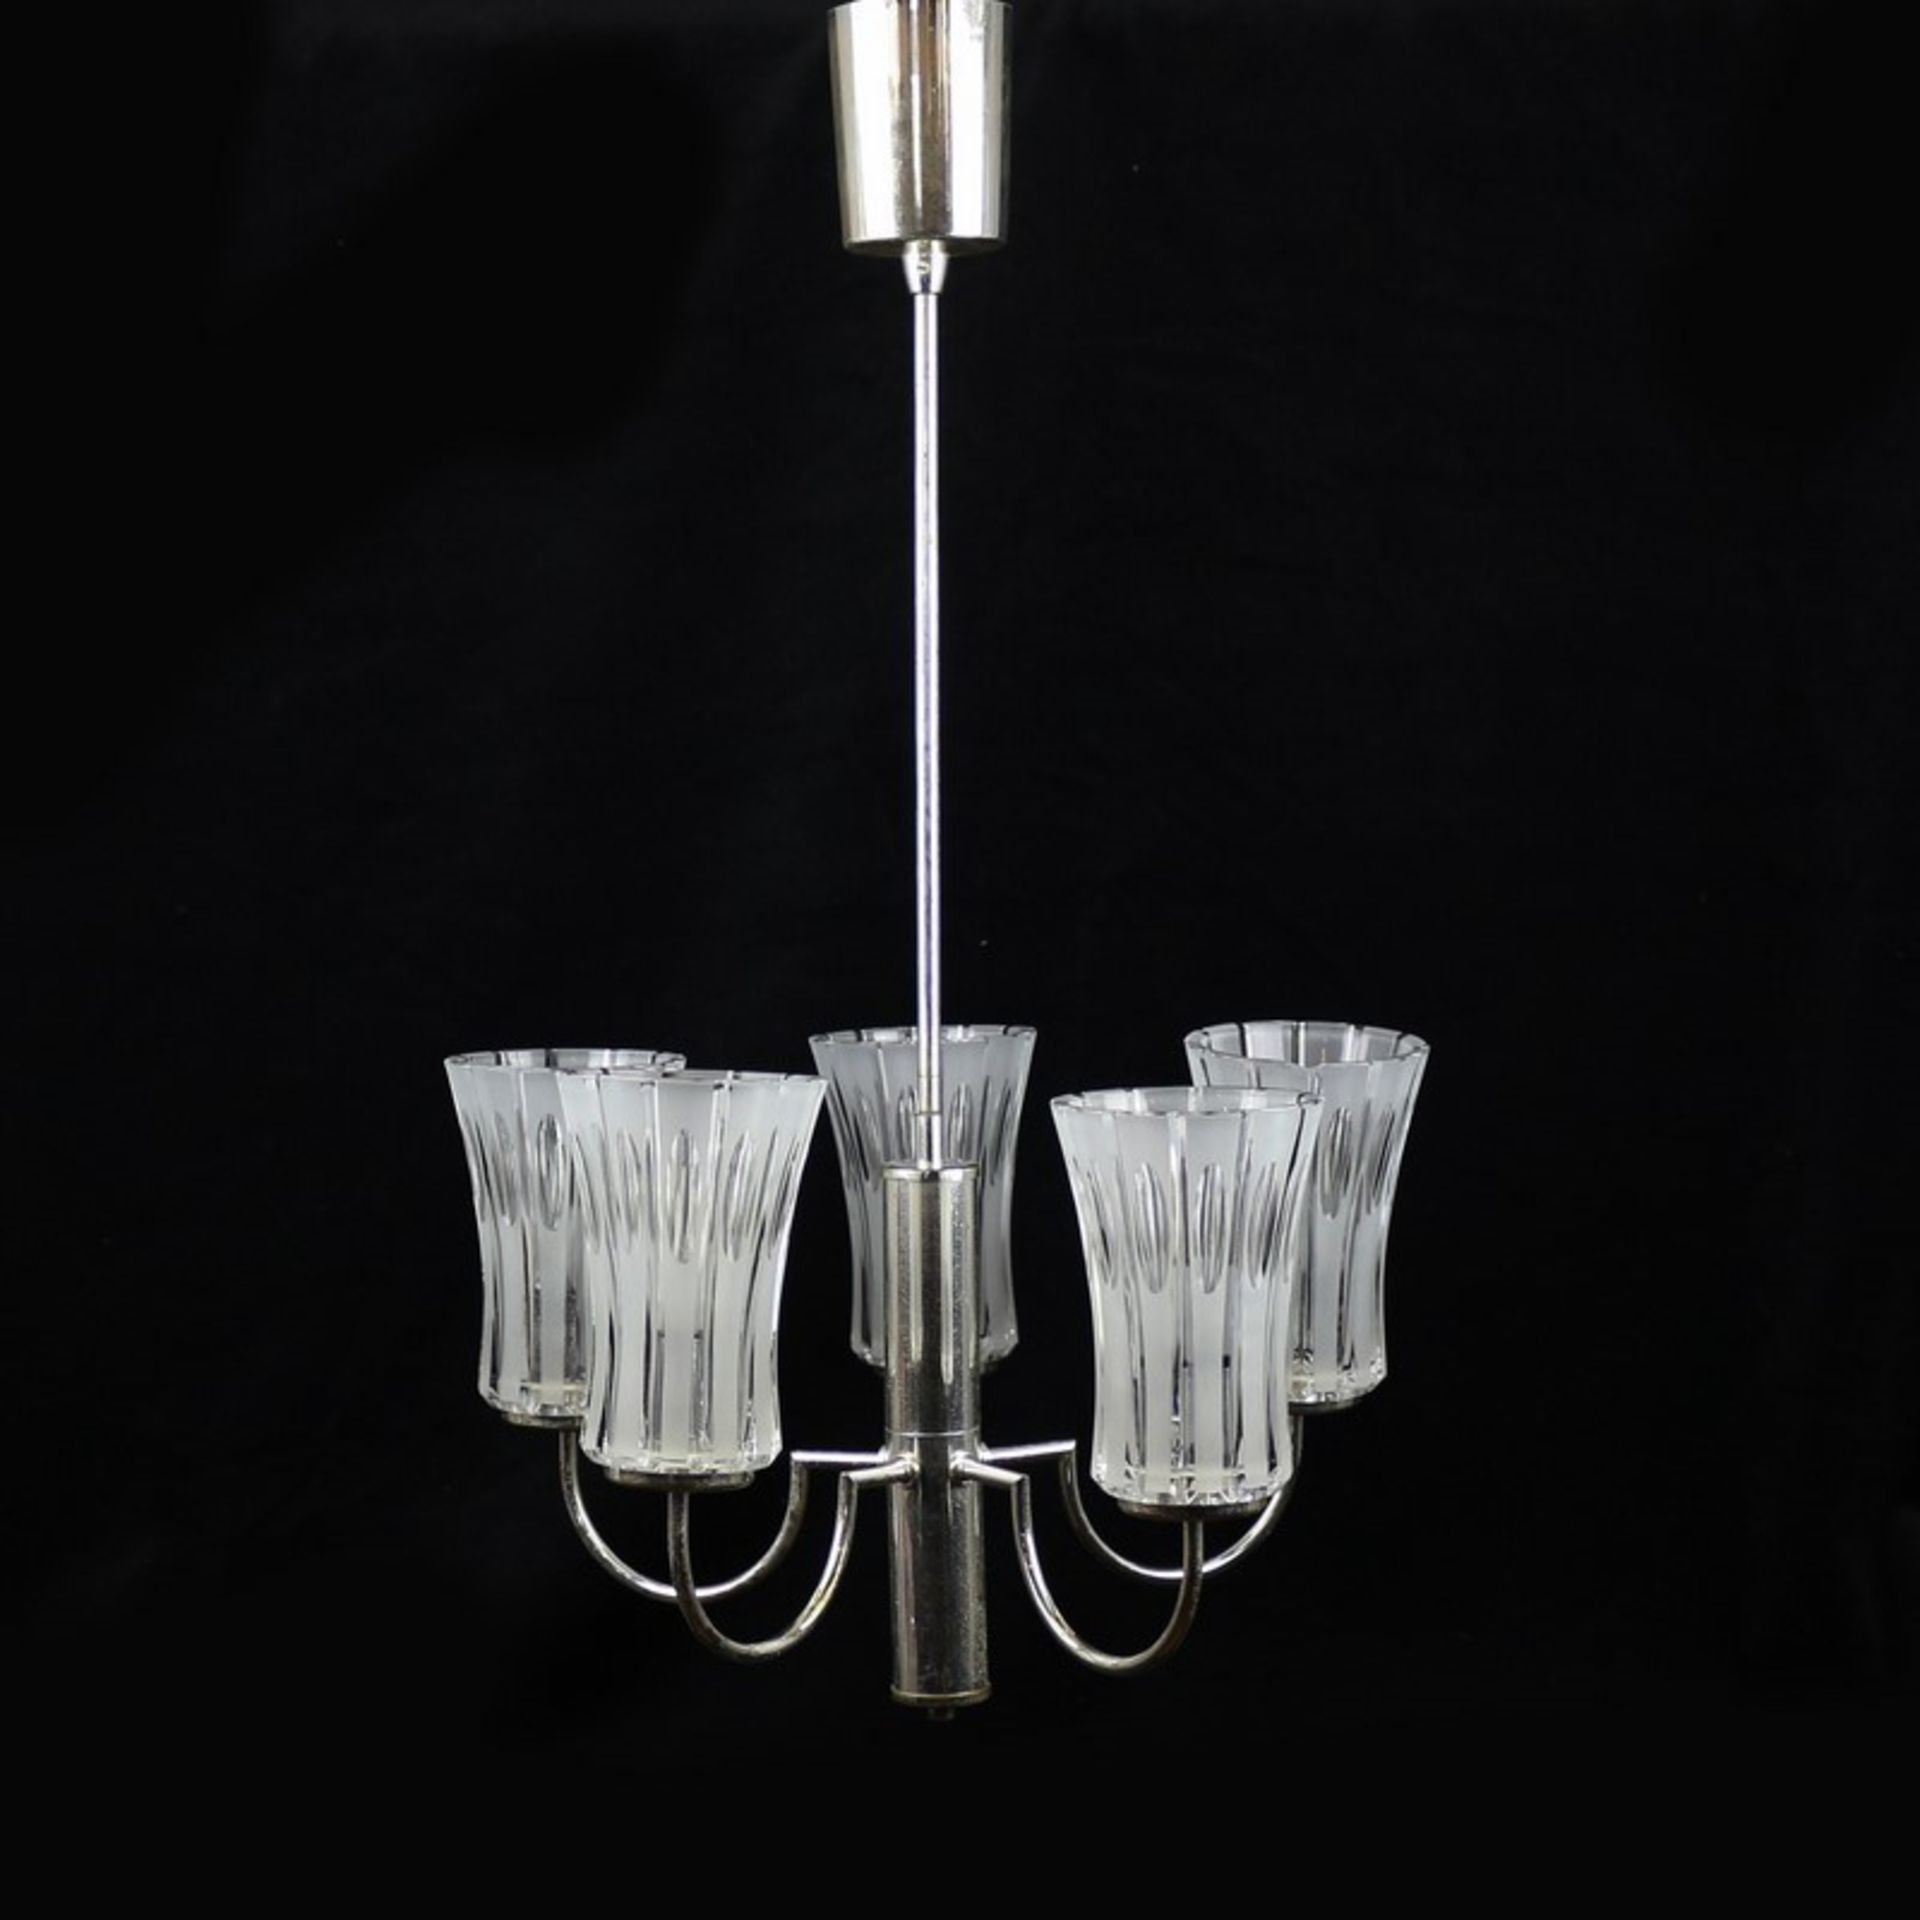 Deckenlampe Metall, 5-flammig, zylindrischer Schaft, gebogte Leuchterarme, konische Glasschirme,